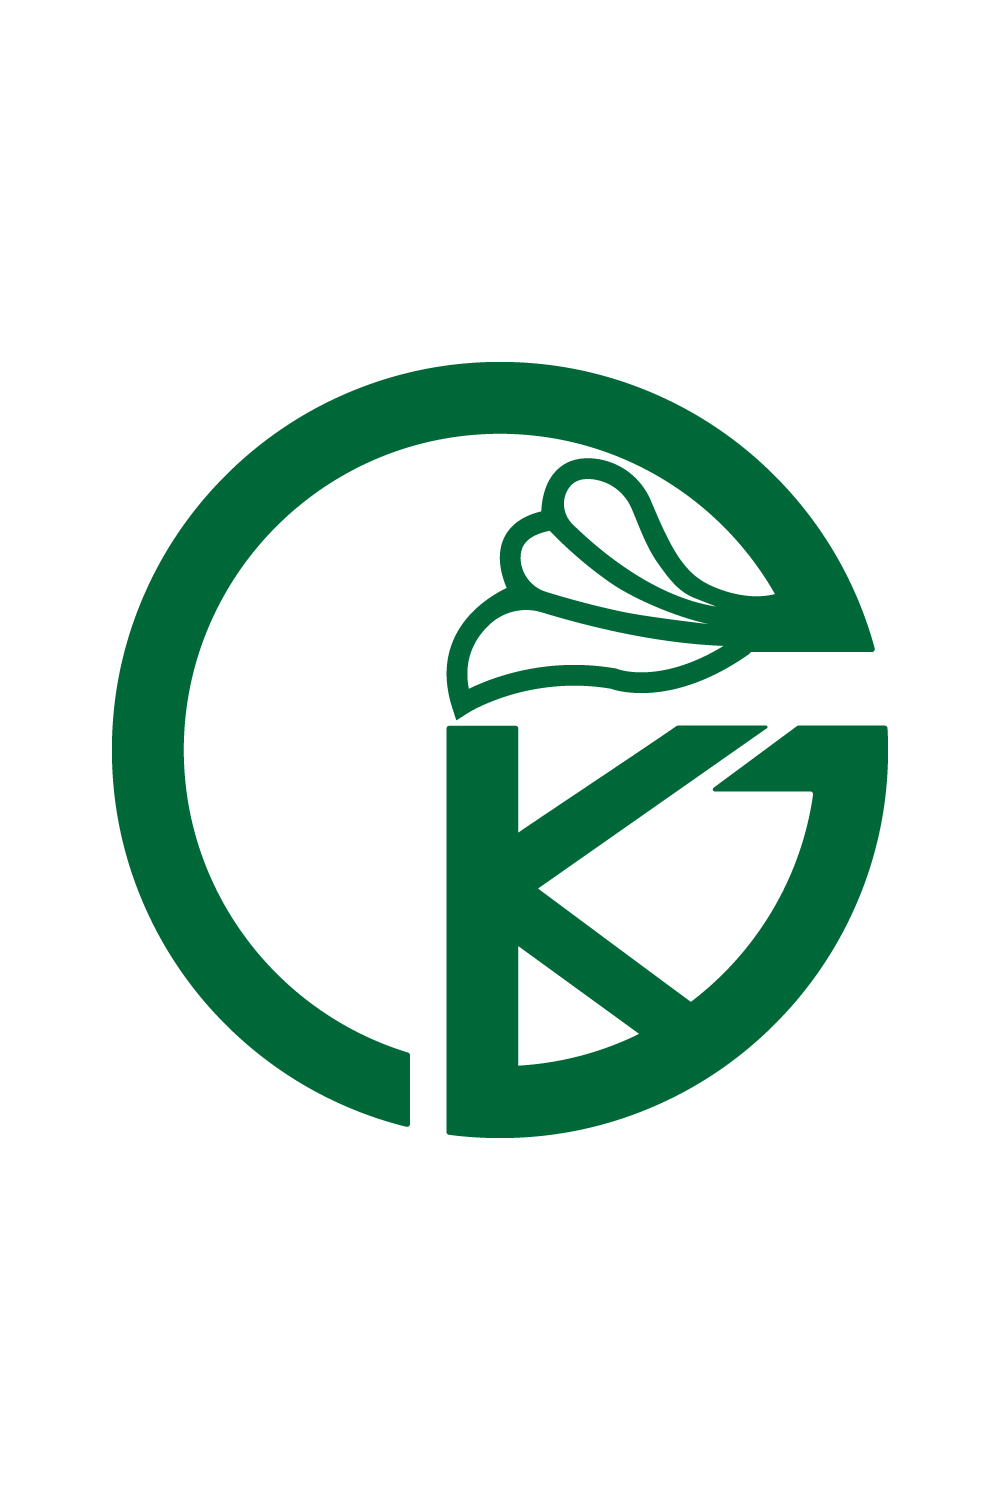 Initials GK letters logo design vector images GK Green Leaf logo design KG logo best icon template illustration Leaf best icon design pinterest preview image.